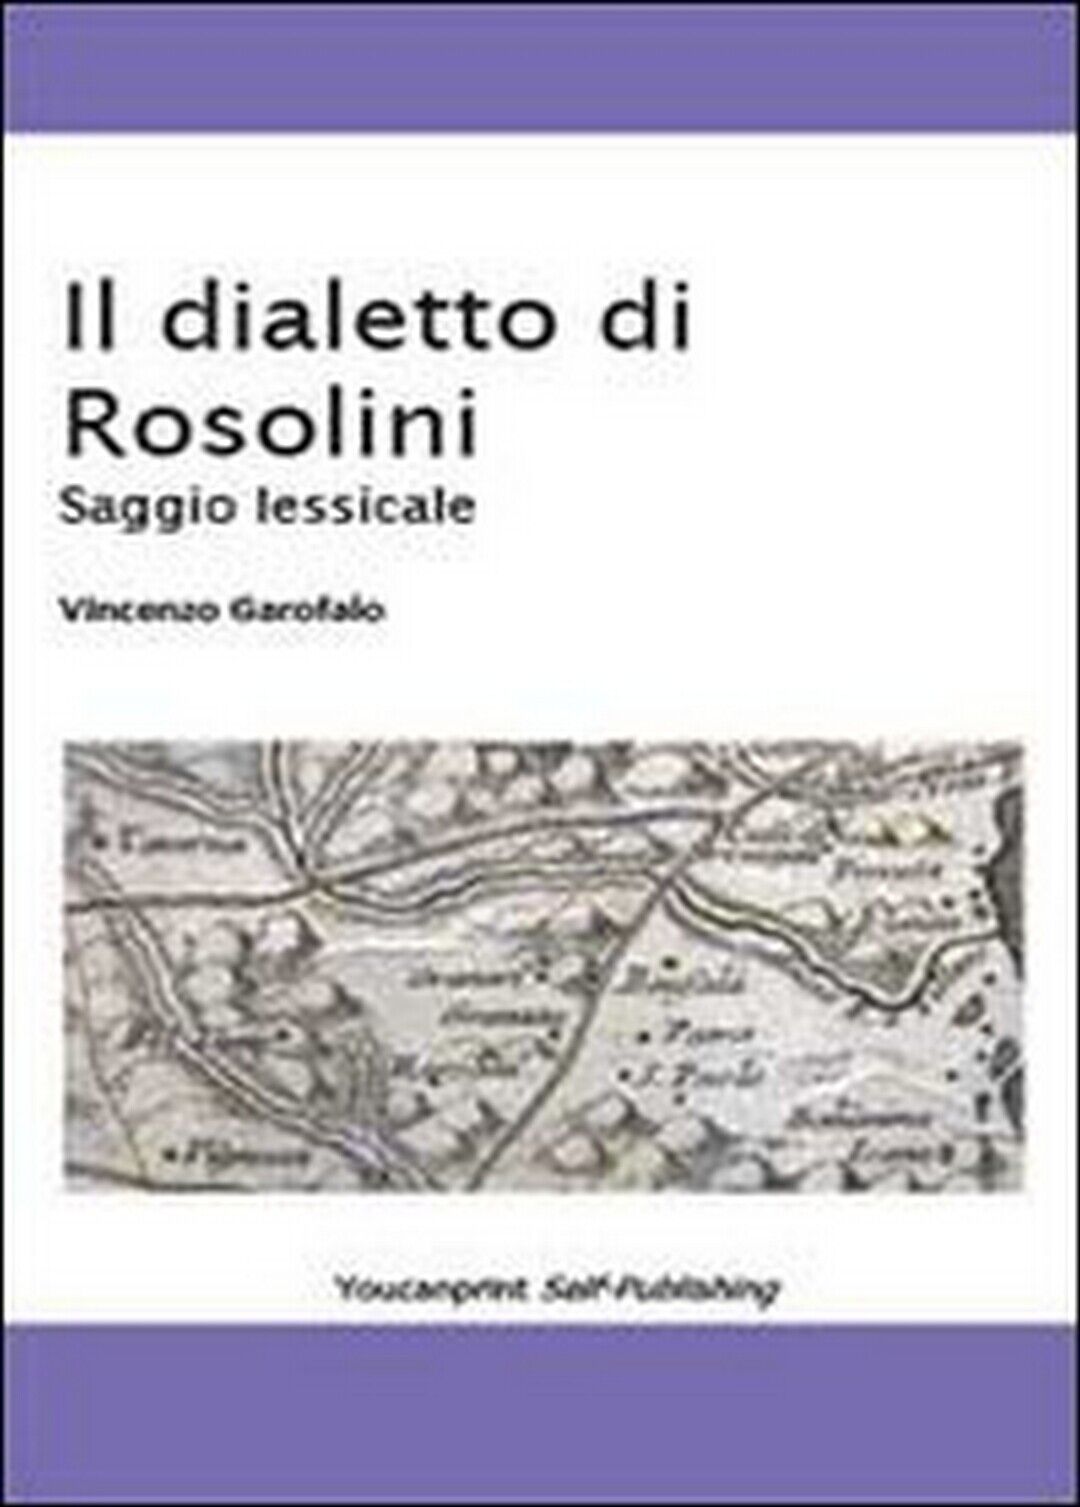 Il dialetto di Rosolini  di Vincenzo Garofalo,  2013,  Youcanprint